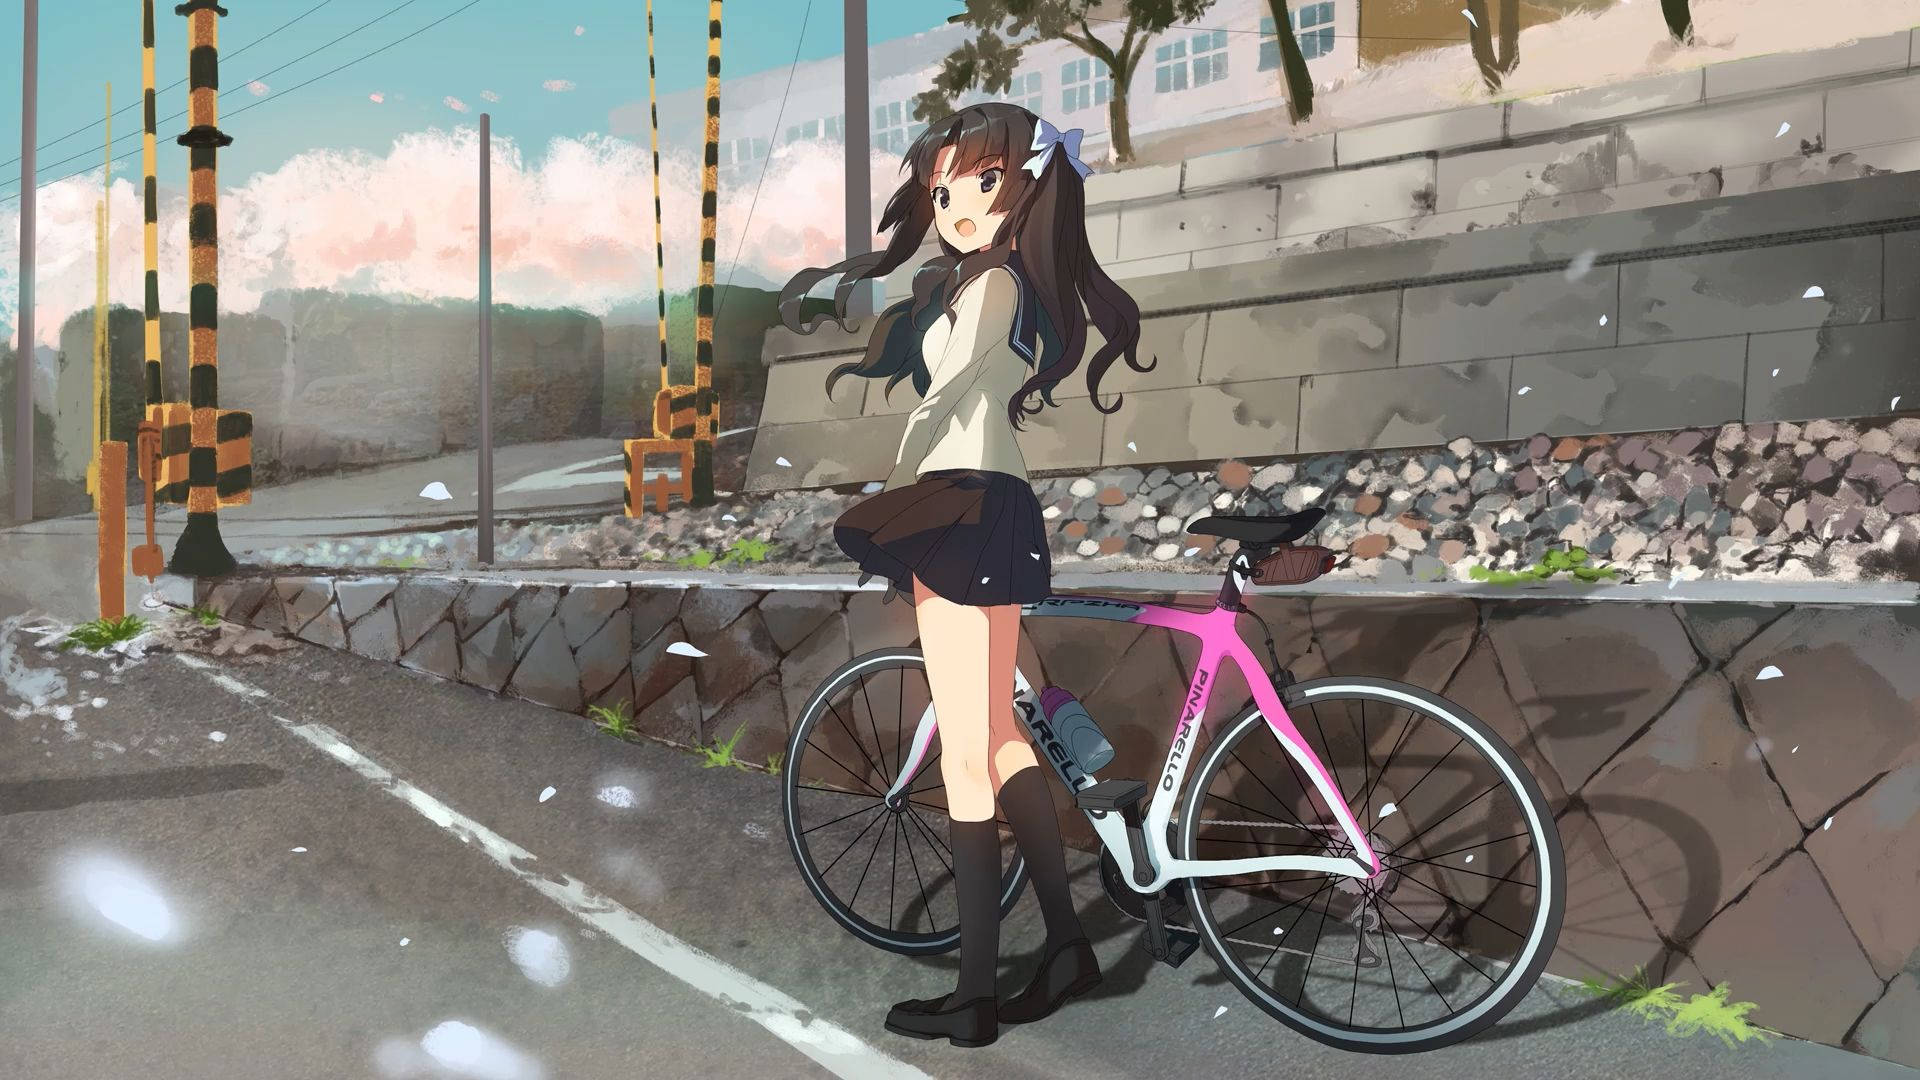 Bike Lover Anime Girl On Roadside